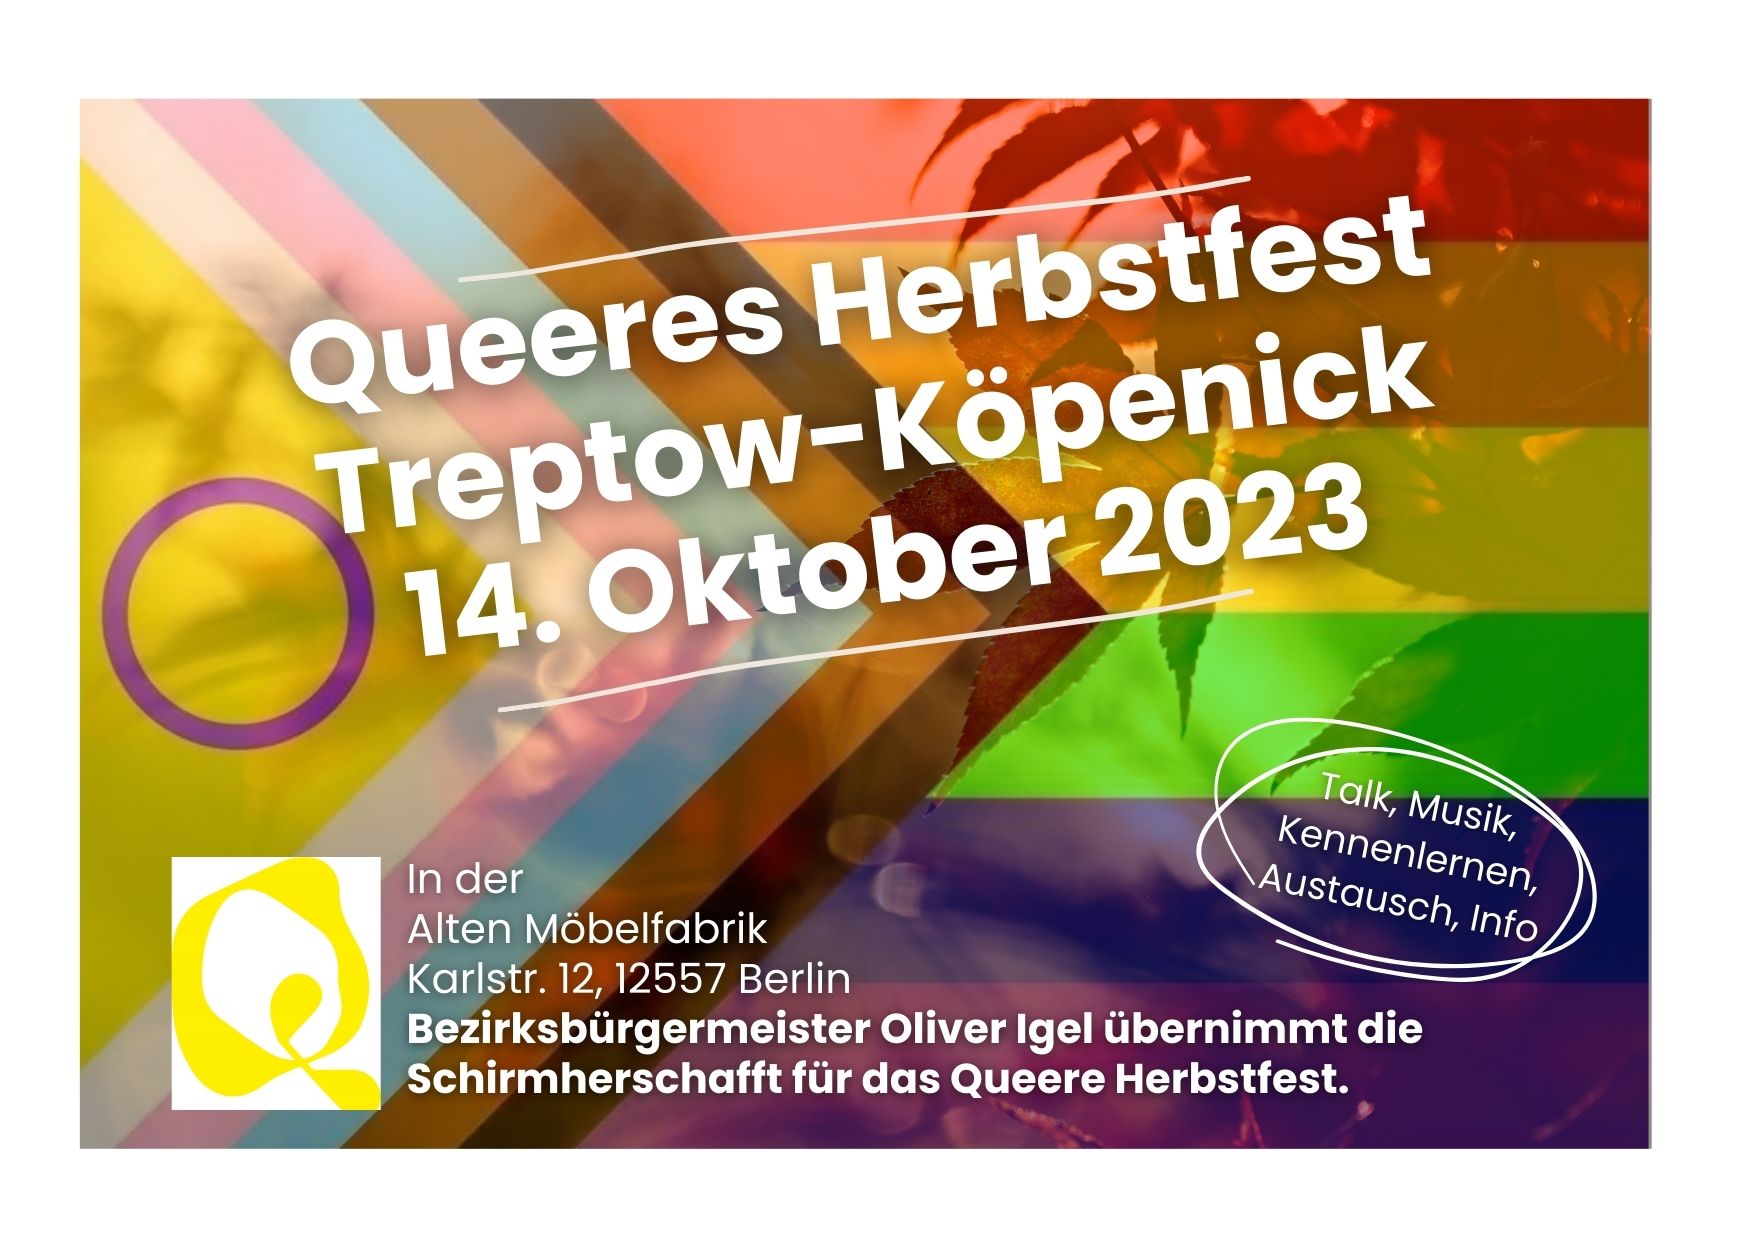 Text: Queeres Herbstfest Treptow-Köpenick 14. Oktober 2023 mit Informationen (siehe unterer Text), Hintergrund: Progressive Pride Flag